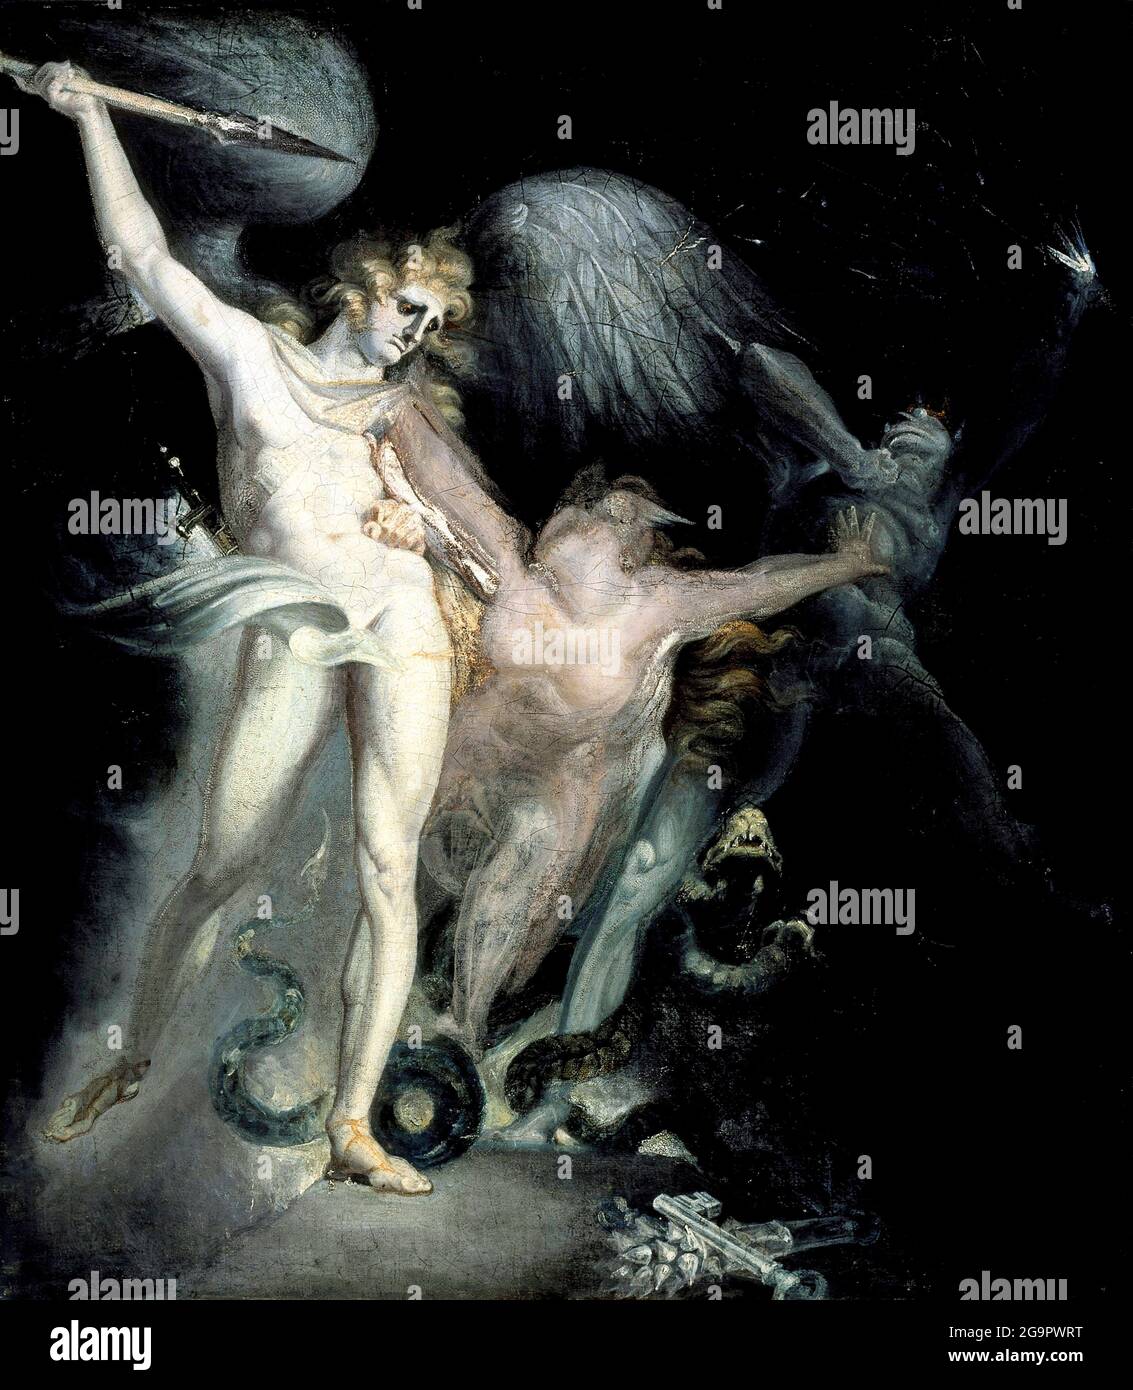 Satanás y la Muerte con el Pecado Interviniendo por Henry Fuseli (Johann Heinrich Füssli; 1741-1825), óleo sobre lienzo, 1799/1800 Foto de stock